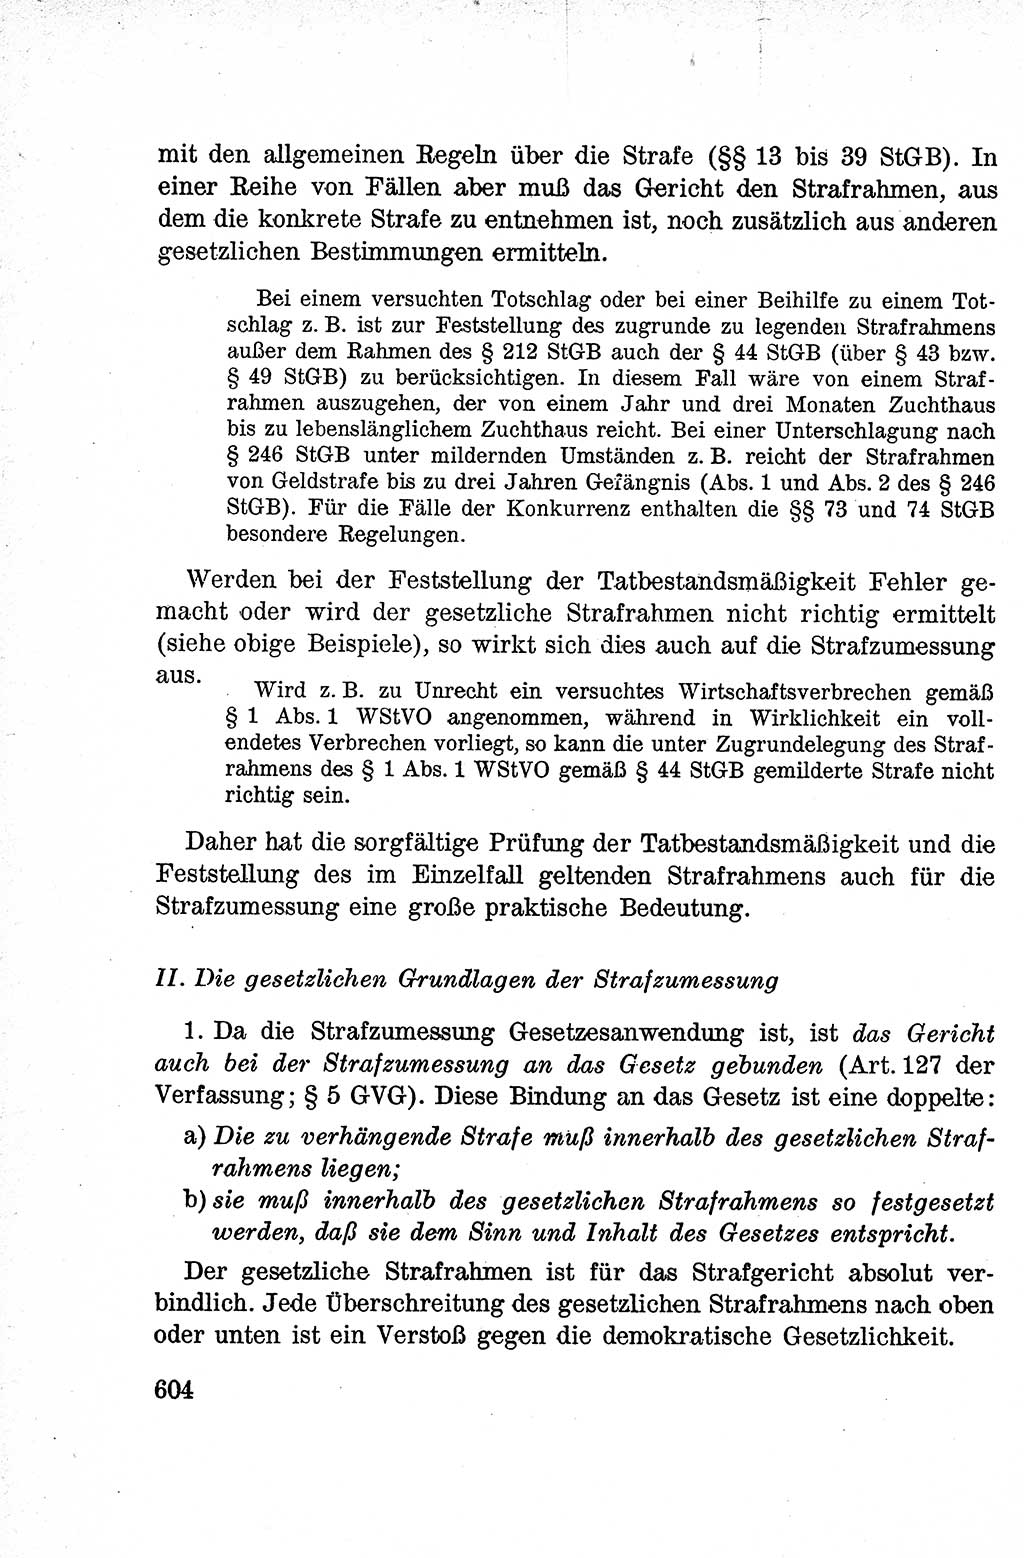 Lehrbuch des Strafrechts der Deutschen Demokratischen Republik (DDR), Allgemeiner Teil 1959, Seite 604 (Lb. Strafr. DDR AT 1959, S. 604)